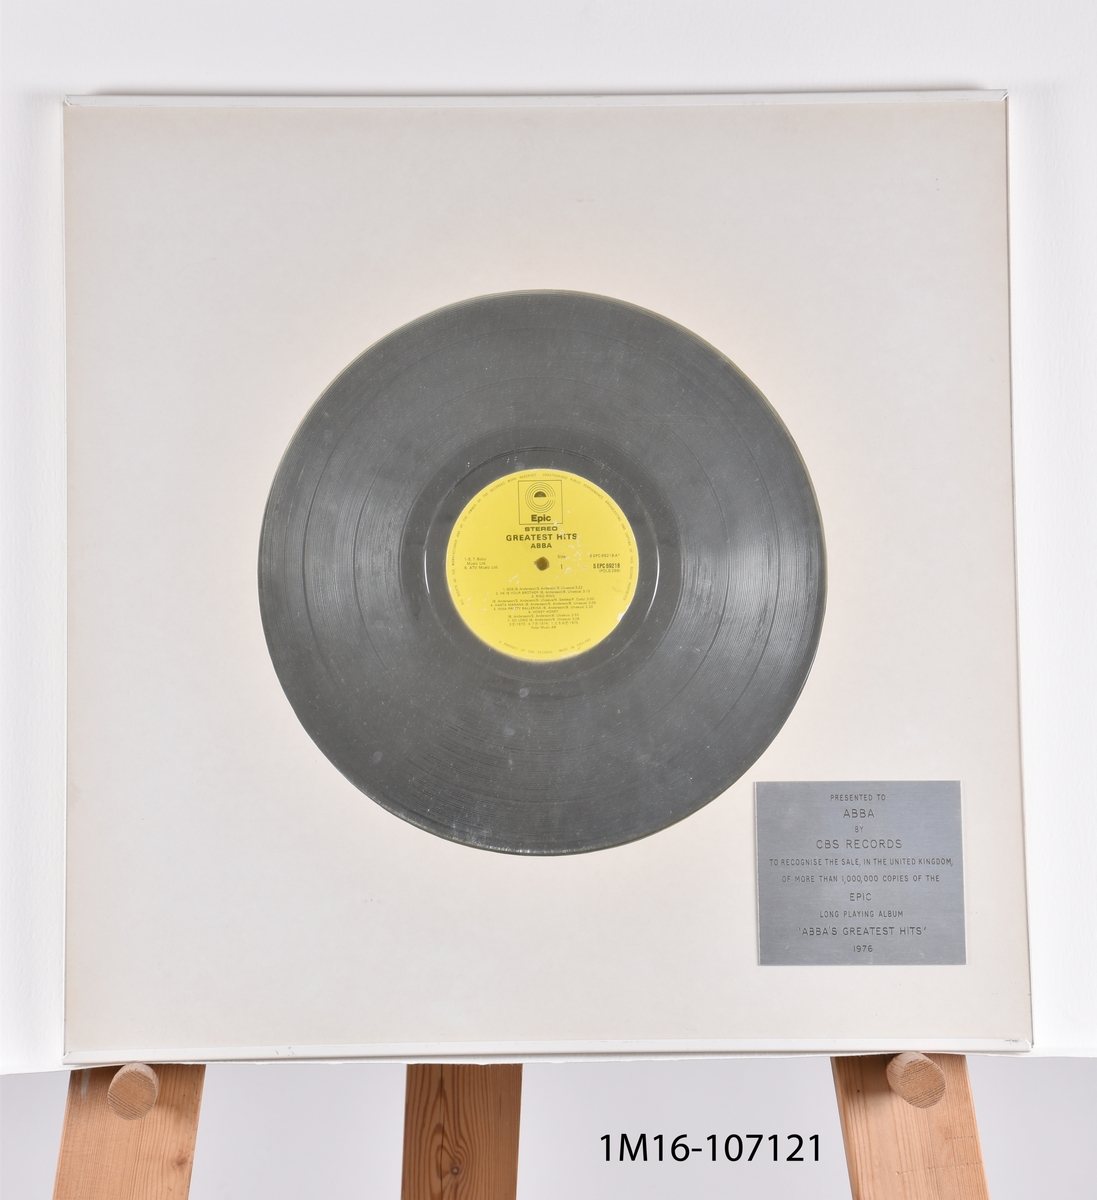 Guldskiva utfärdat till ABBA av CBS Records för mer än 1 000 000 sålda exemplar av ABBA Greatest Hits. Silverfärgad skiva mot vit bakgrund. Plakett i nedre högra hörnet.